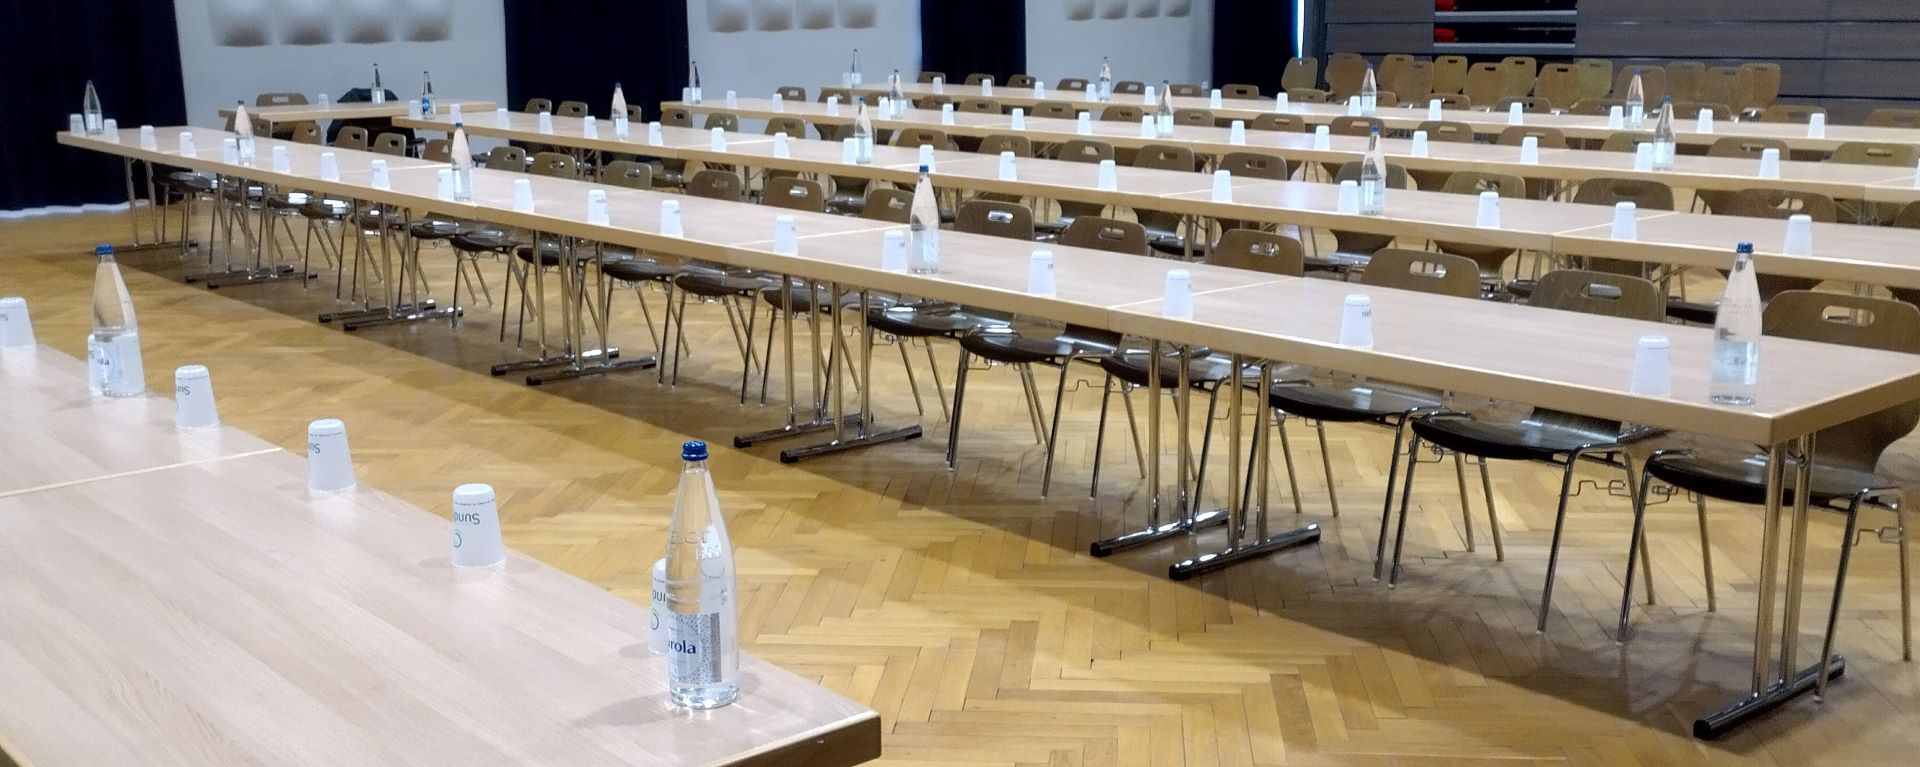 Salle du Conseil Communautaire d'Altkirch, avec chaises tables alignées, vide de monde, avant la séance.